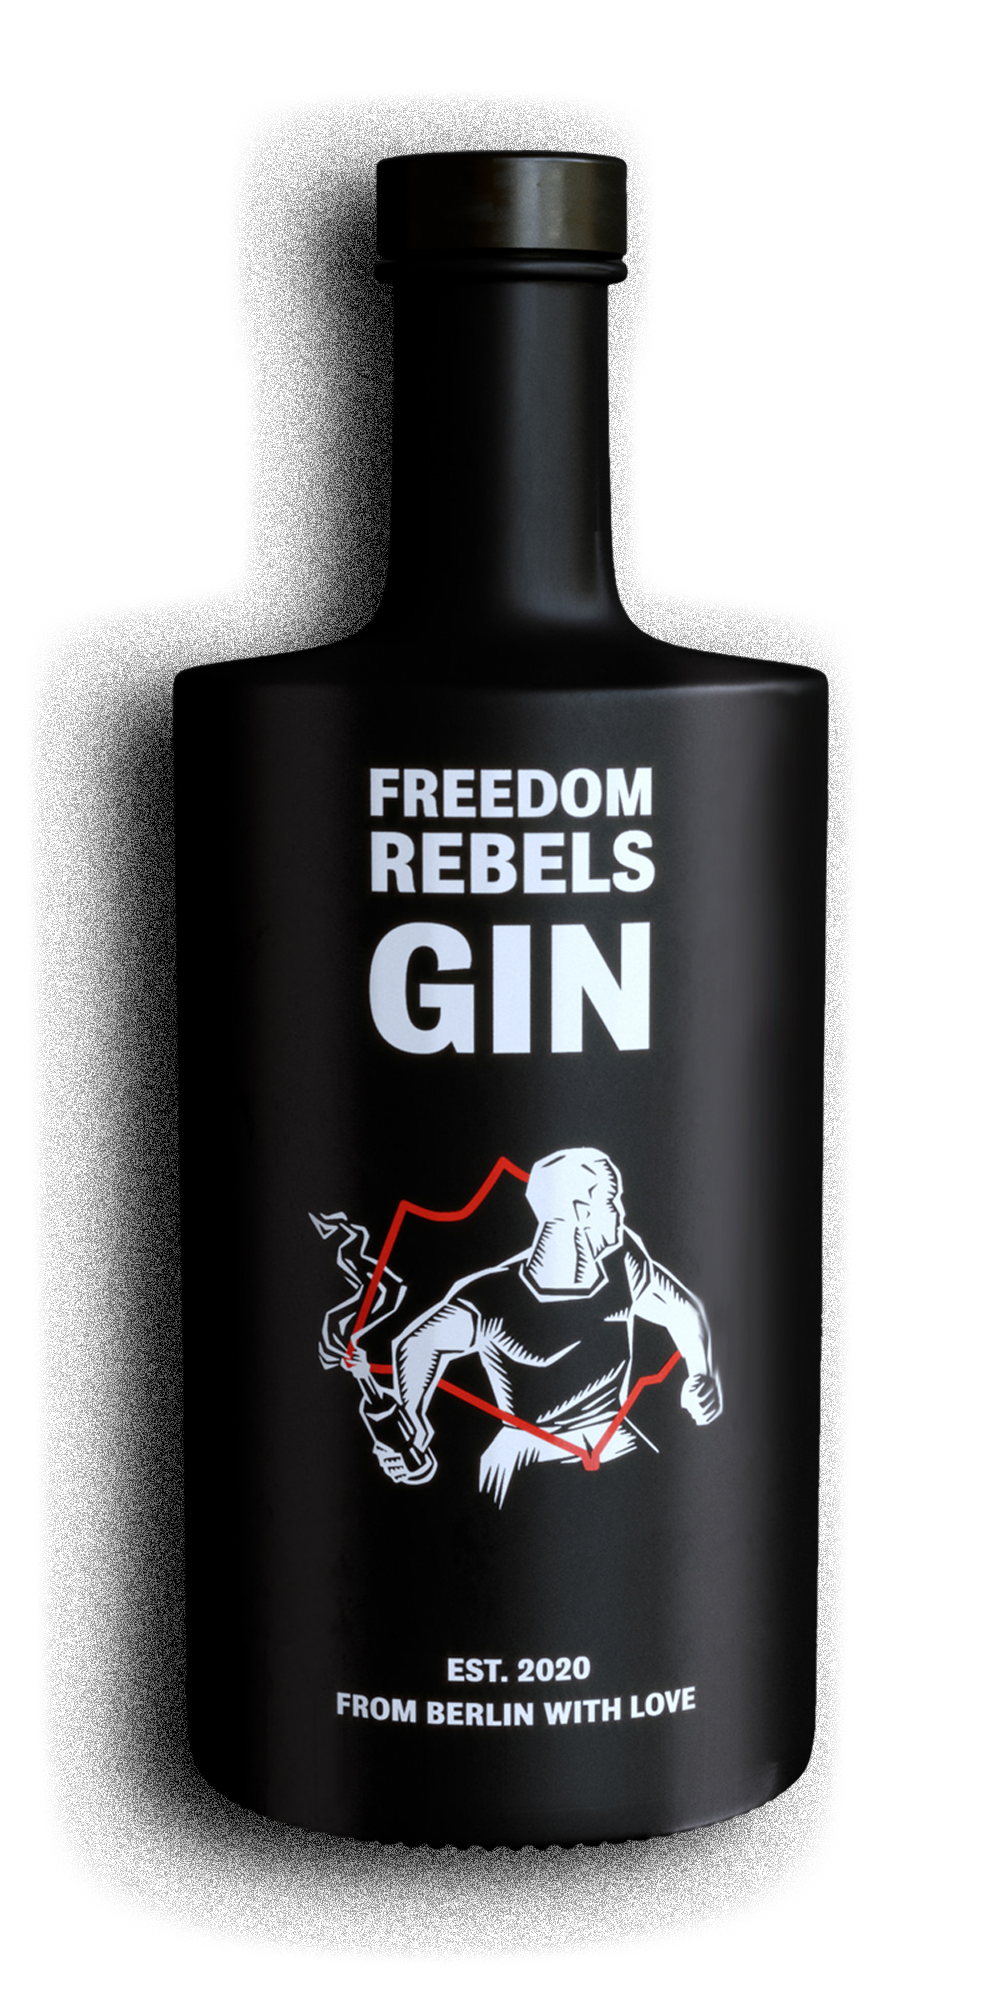 Foto af FREEDOM REBELS GIN-flasken (forsiden)